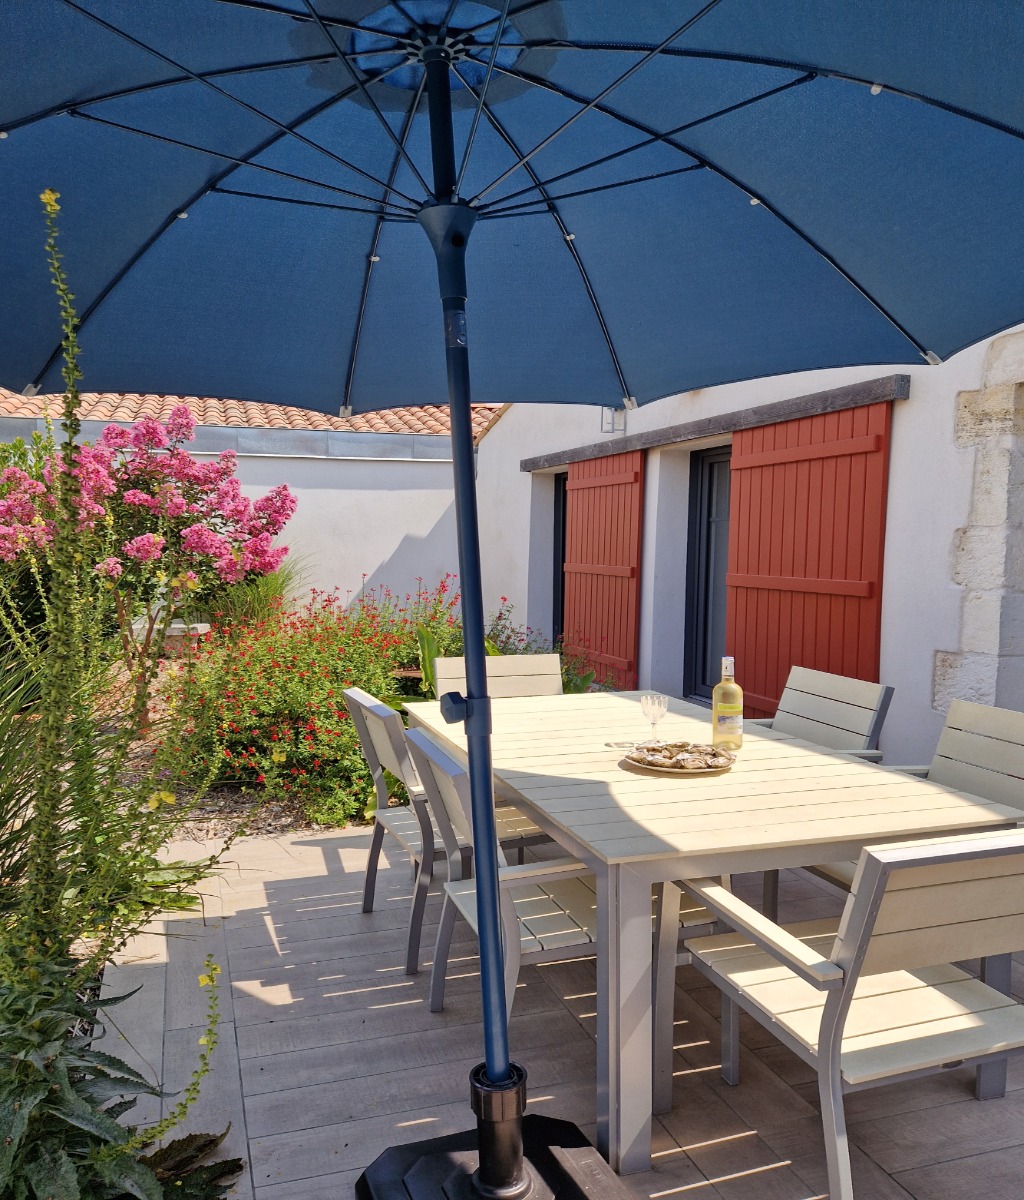 La terrasse sous le parasol - Location de vacances - Saint-Trojan-les-Bains